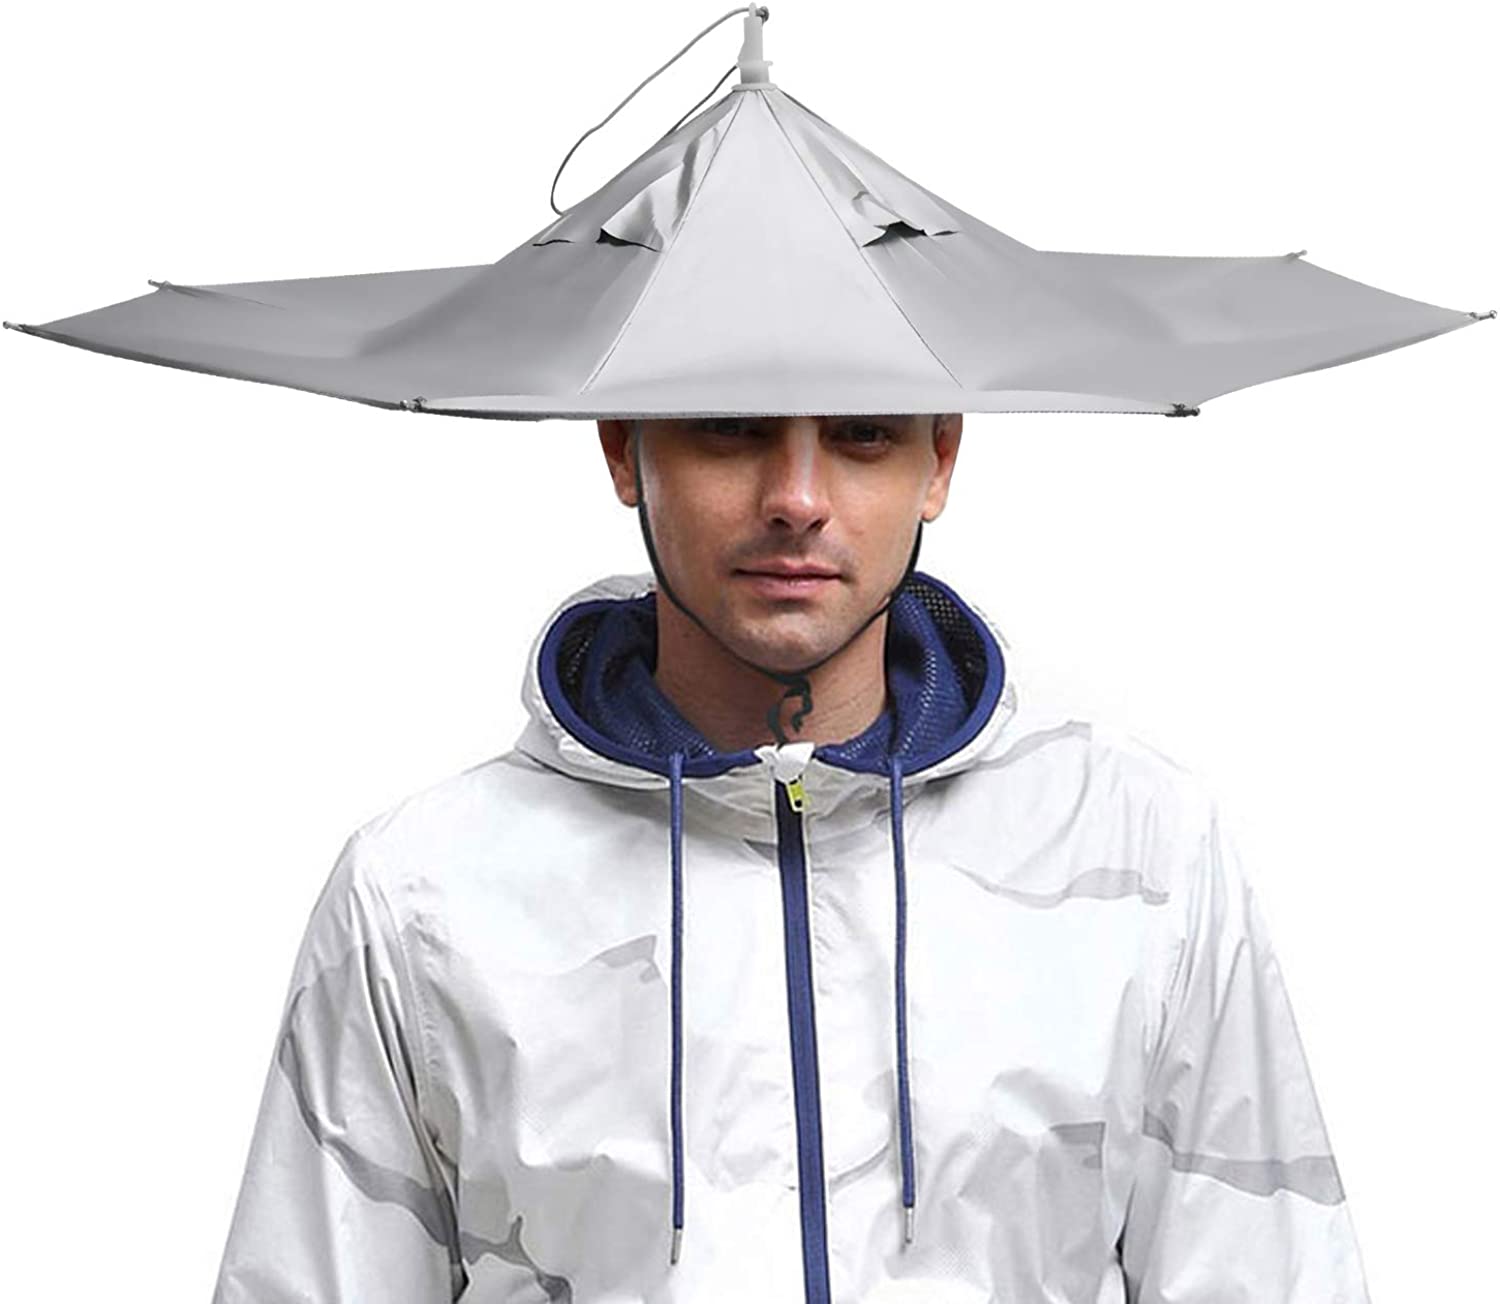  NEW-Vi Fishing Umbrella Hat Folding Sun Rain Cap